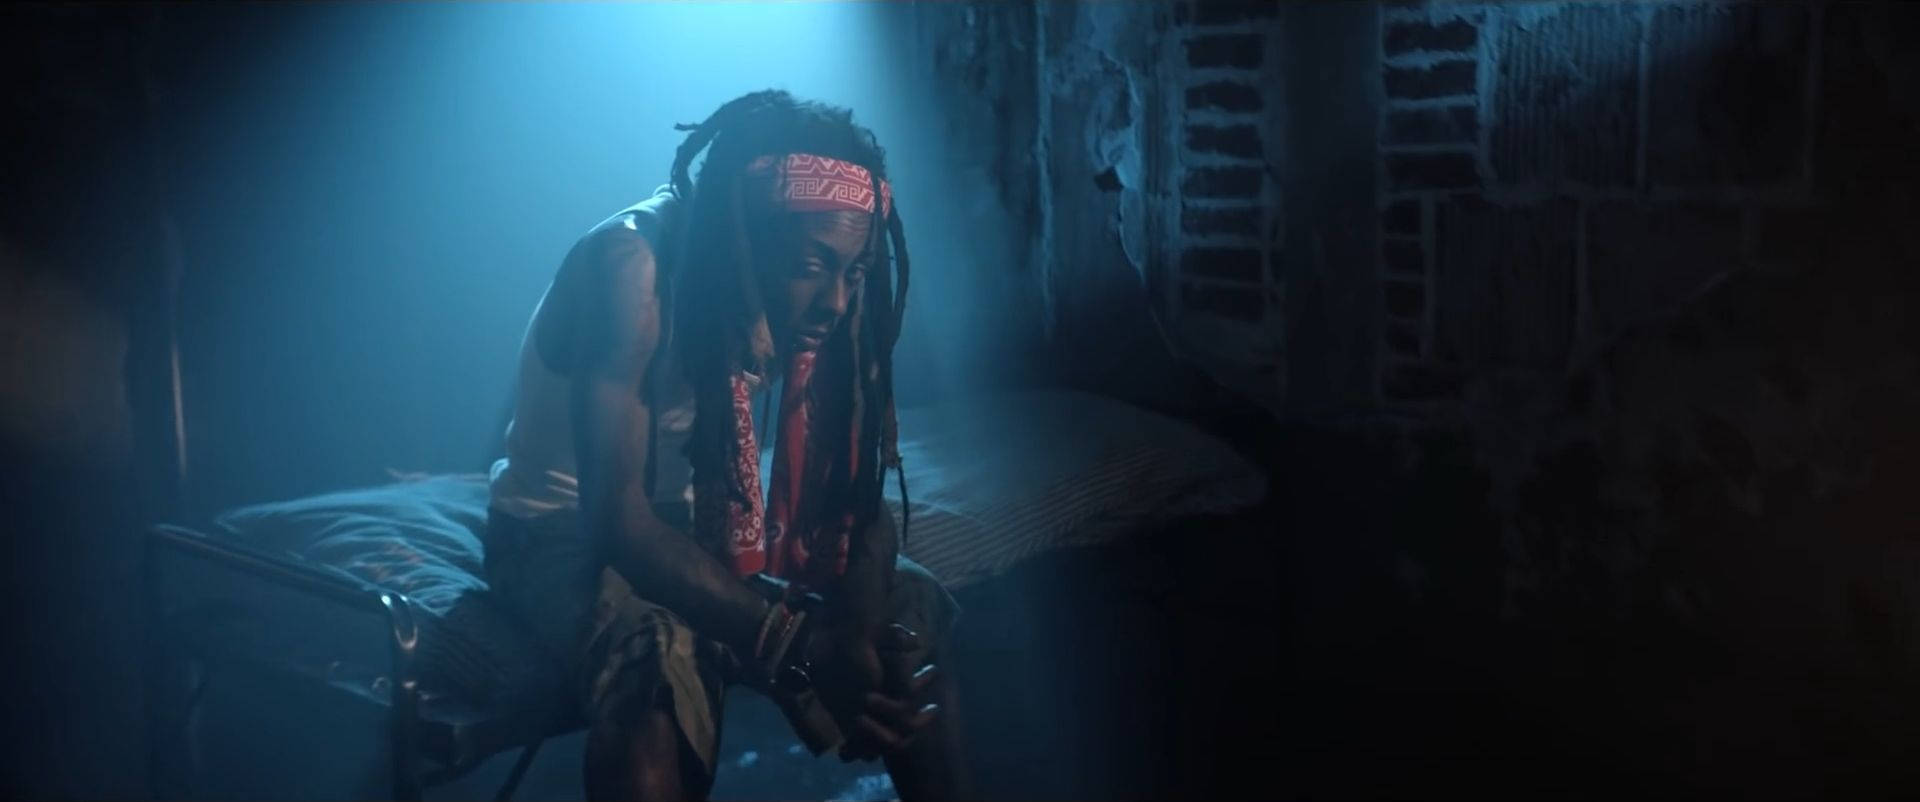 Lil Wayne In Dark Background